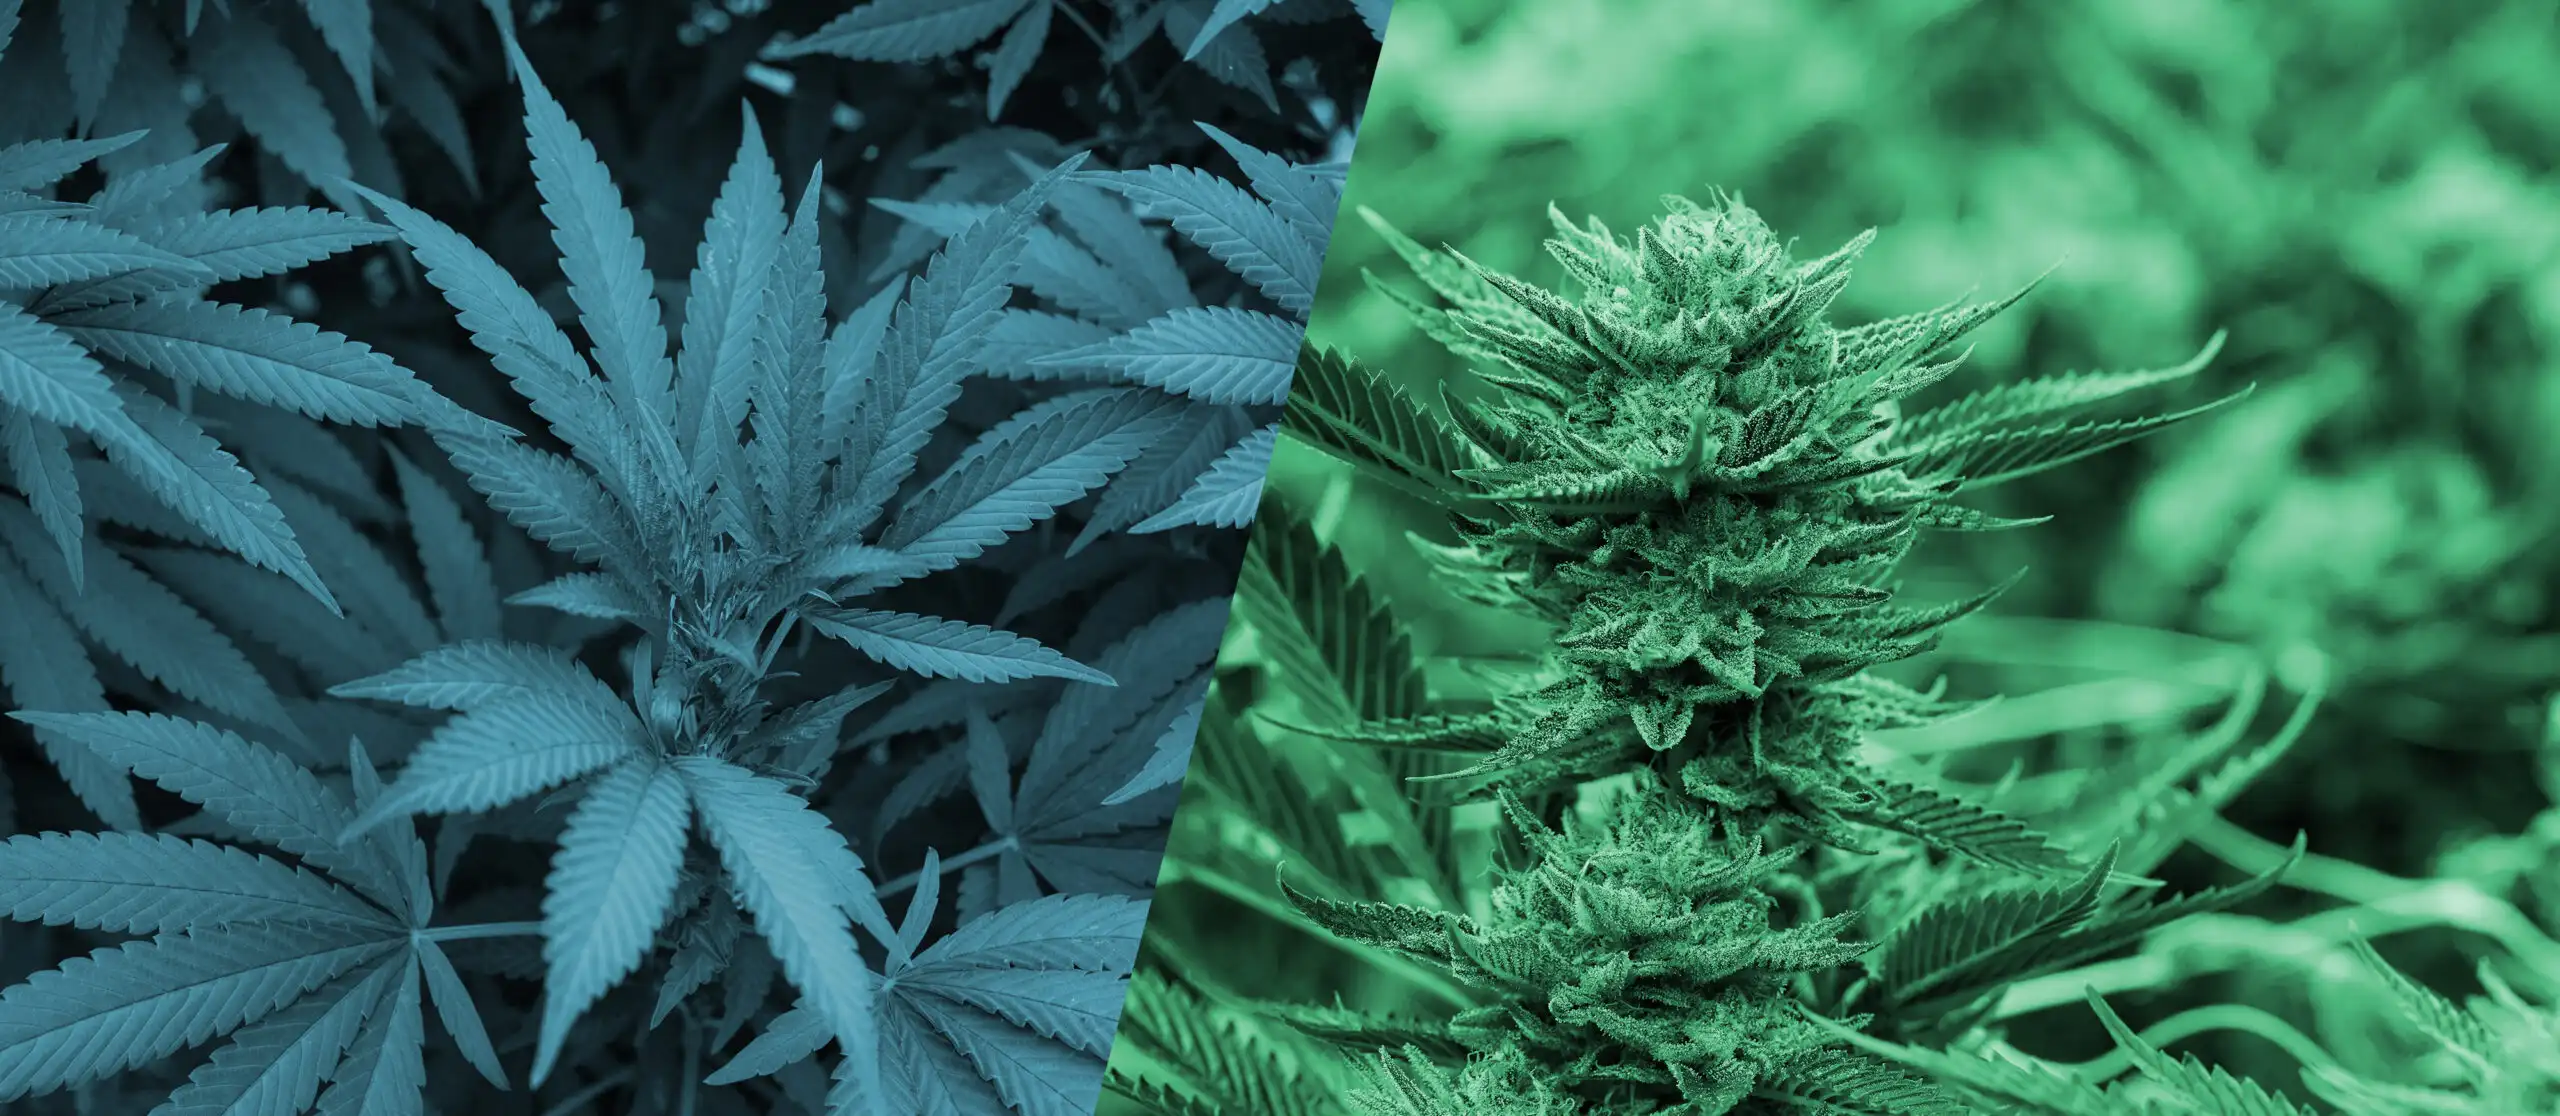 Hemp vs. Marijuana: What's the Difference?